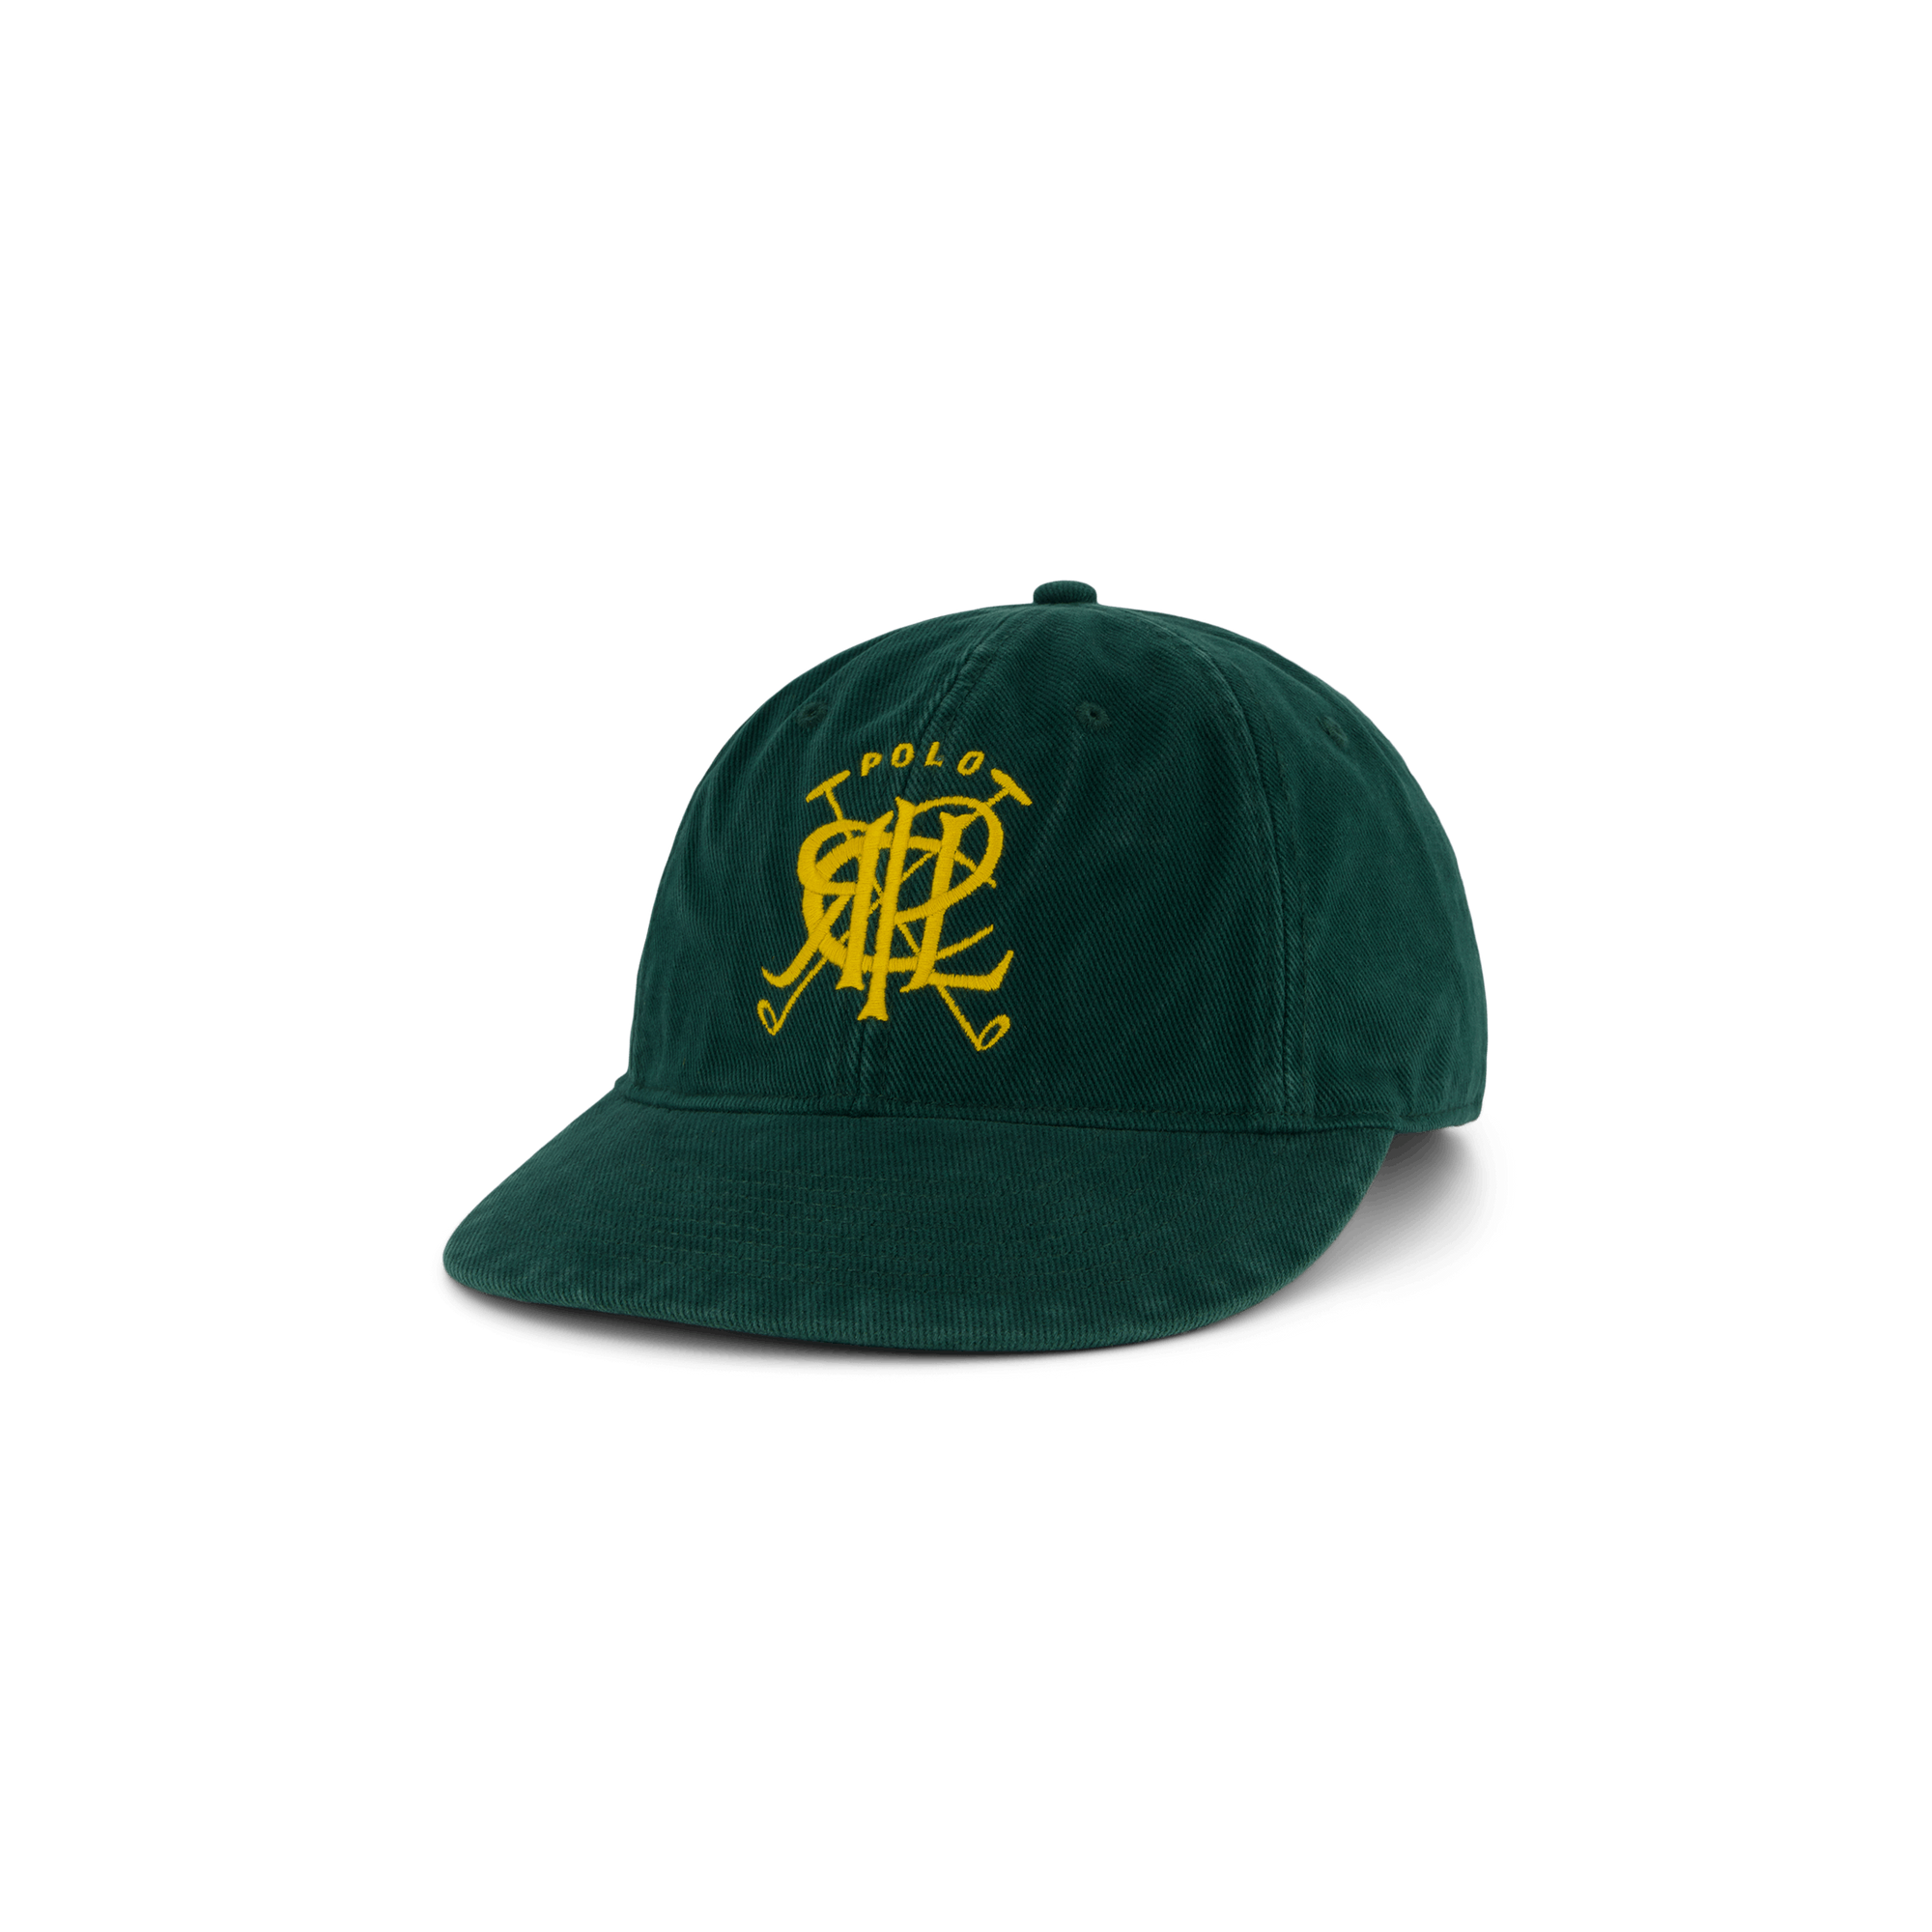 Cricket Crest Twill Ball Cap Moss Agate